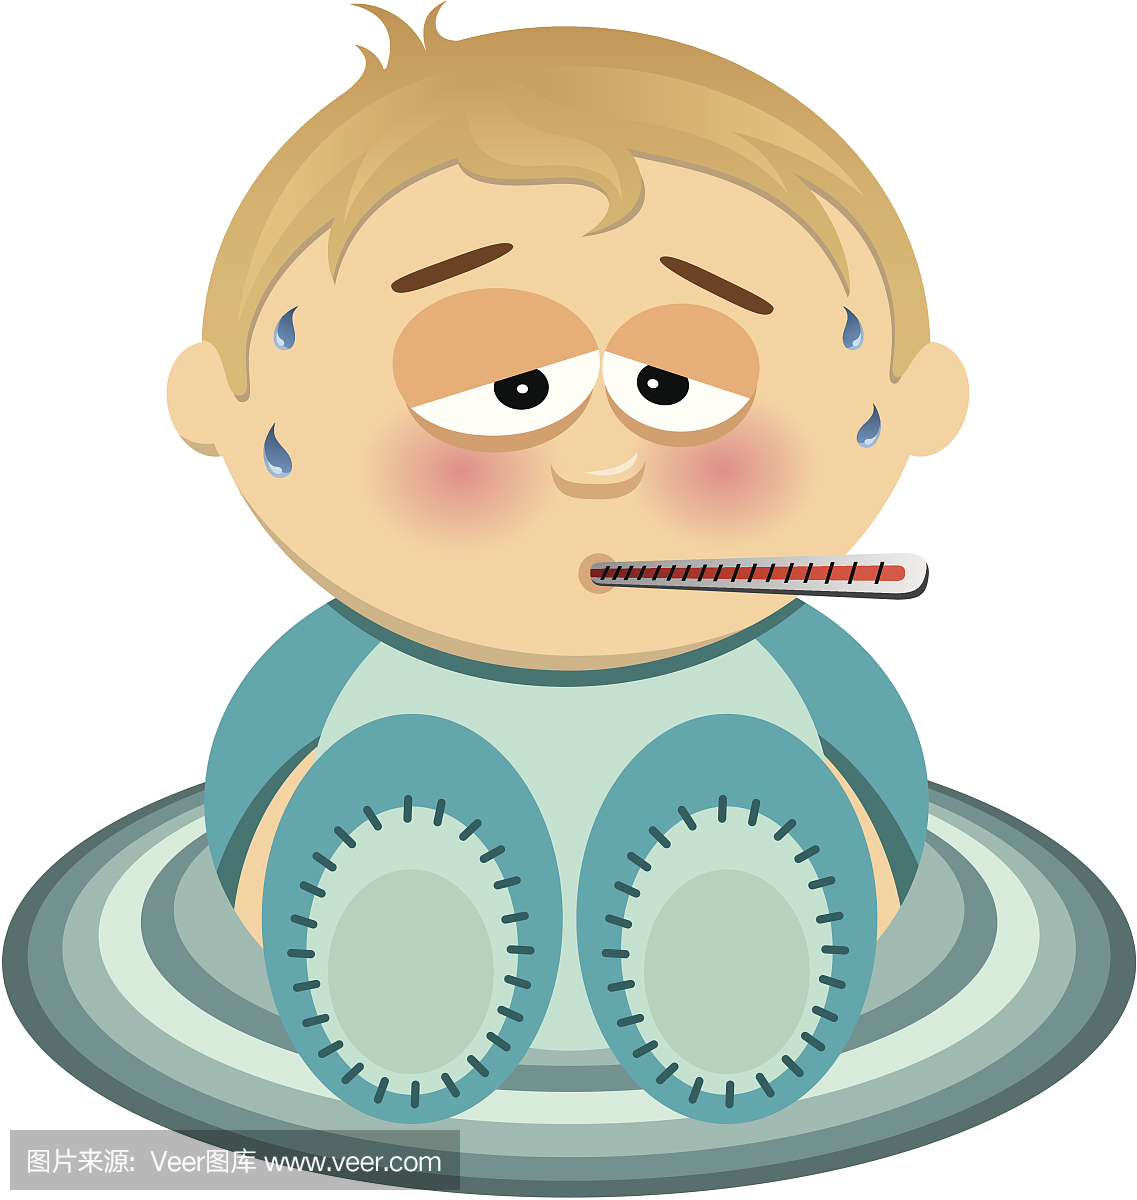 一个年轻的婴儿发烧的插图